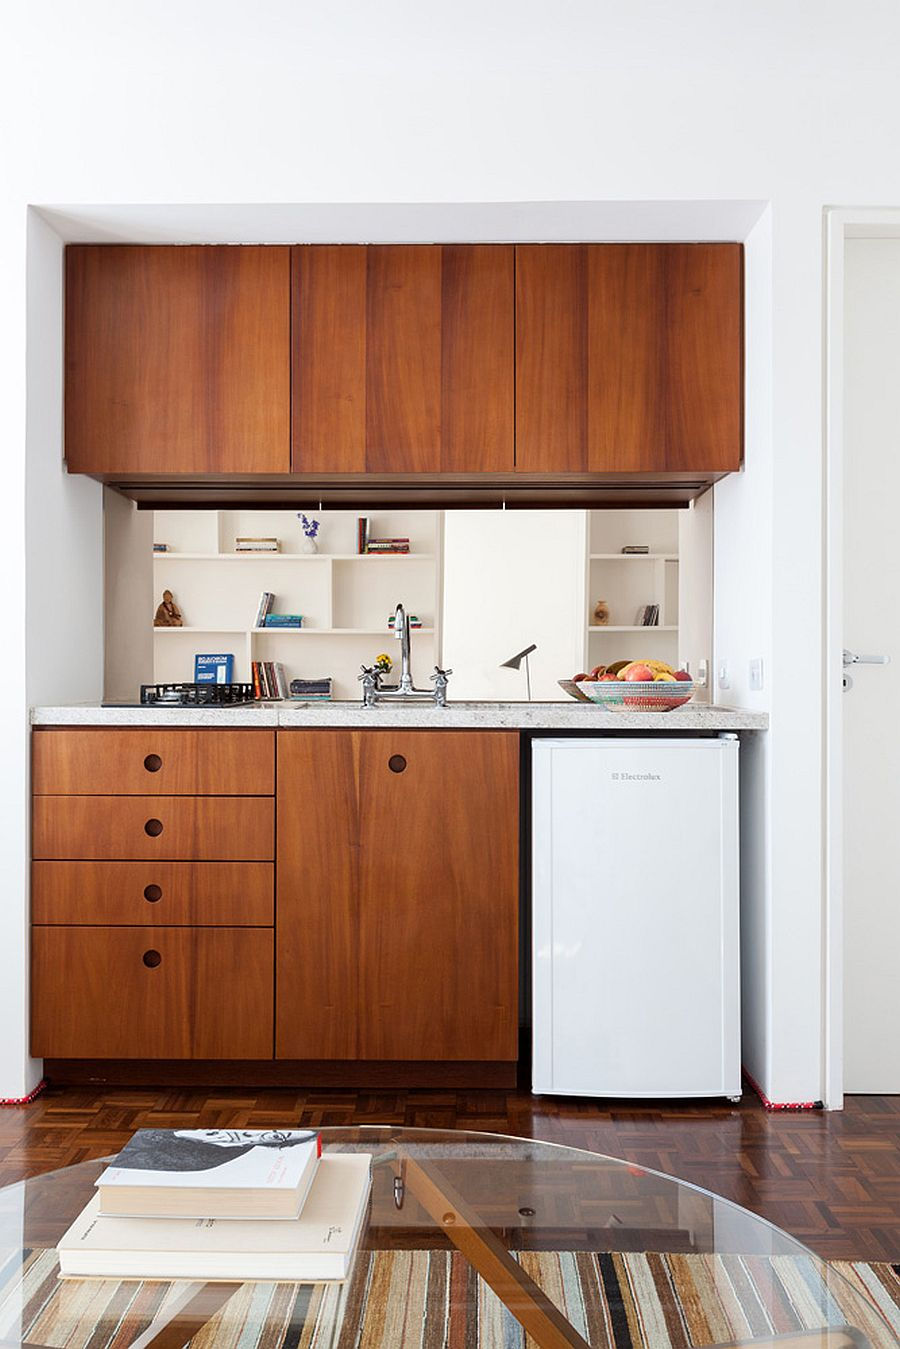 Tủ bếp bằng gỗ tạo điểm nhấn ấm áp cho căn hộ màu trắng chủ đạo.